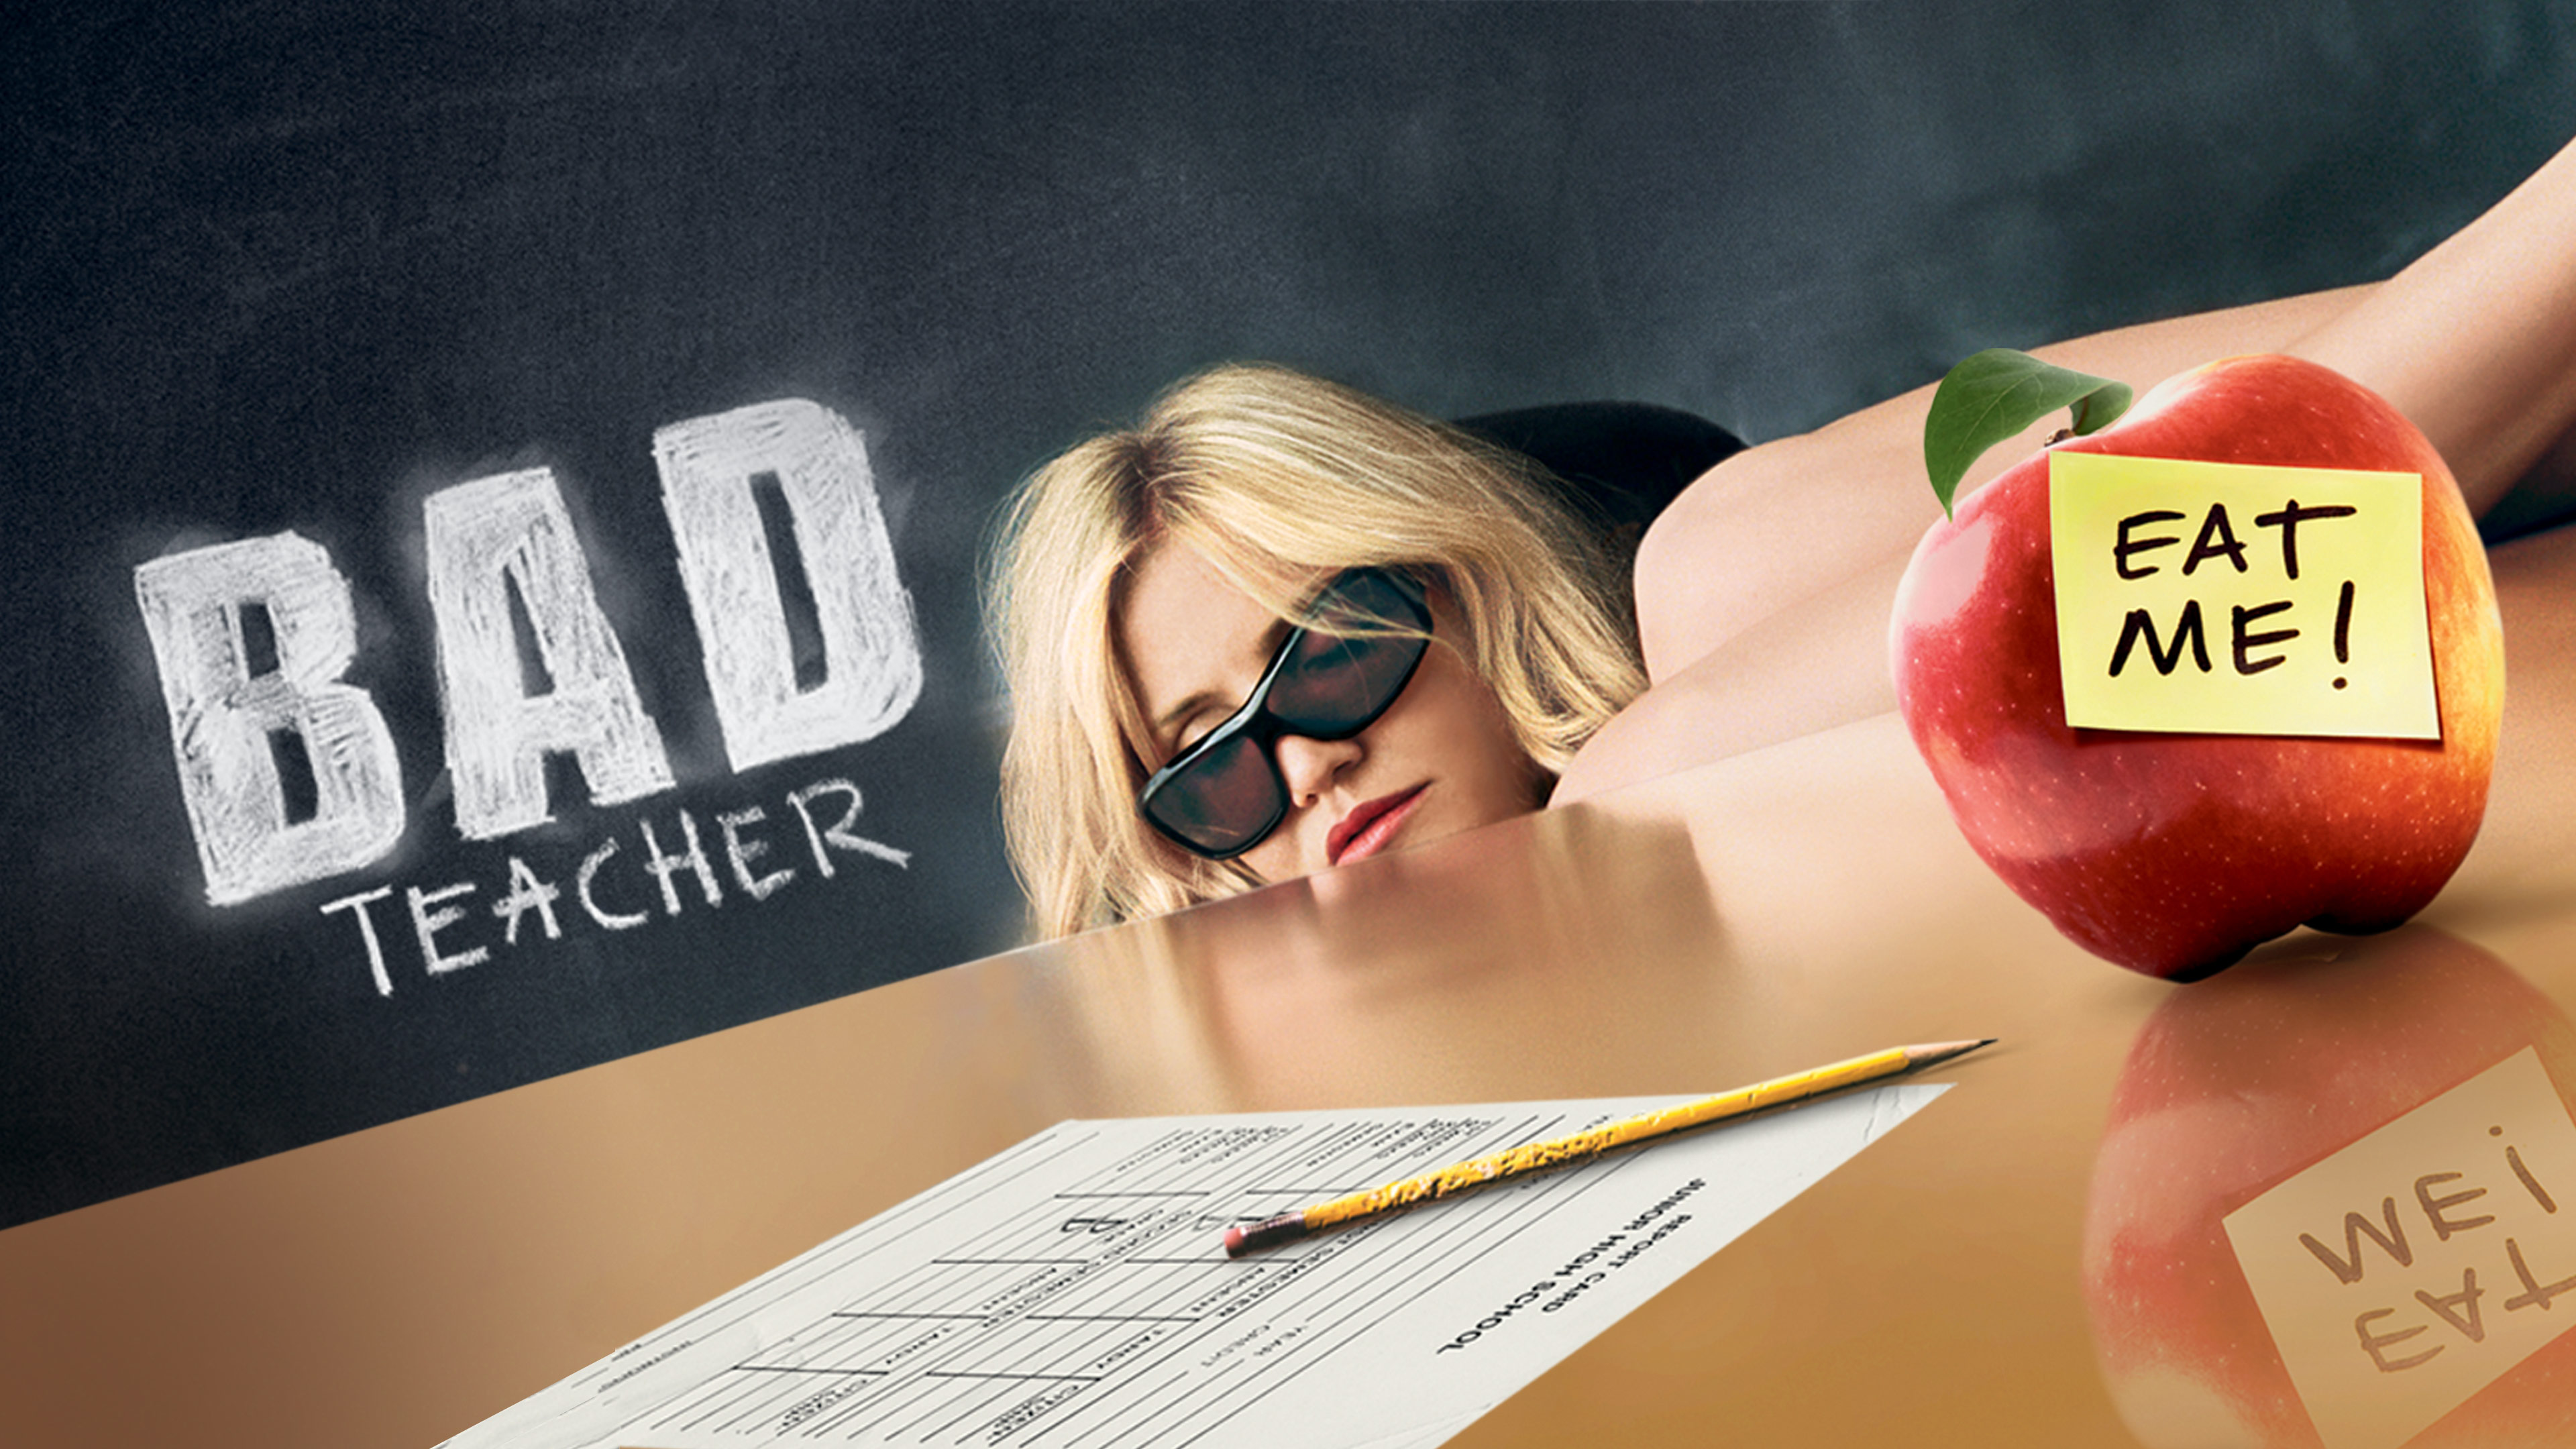 Watch Bad Teacher Online | Stream Full Movies